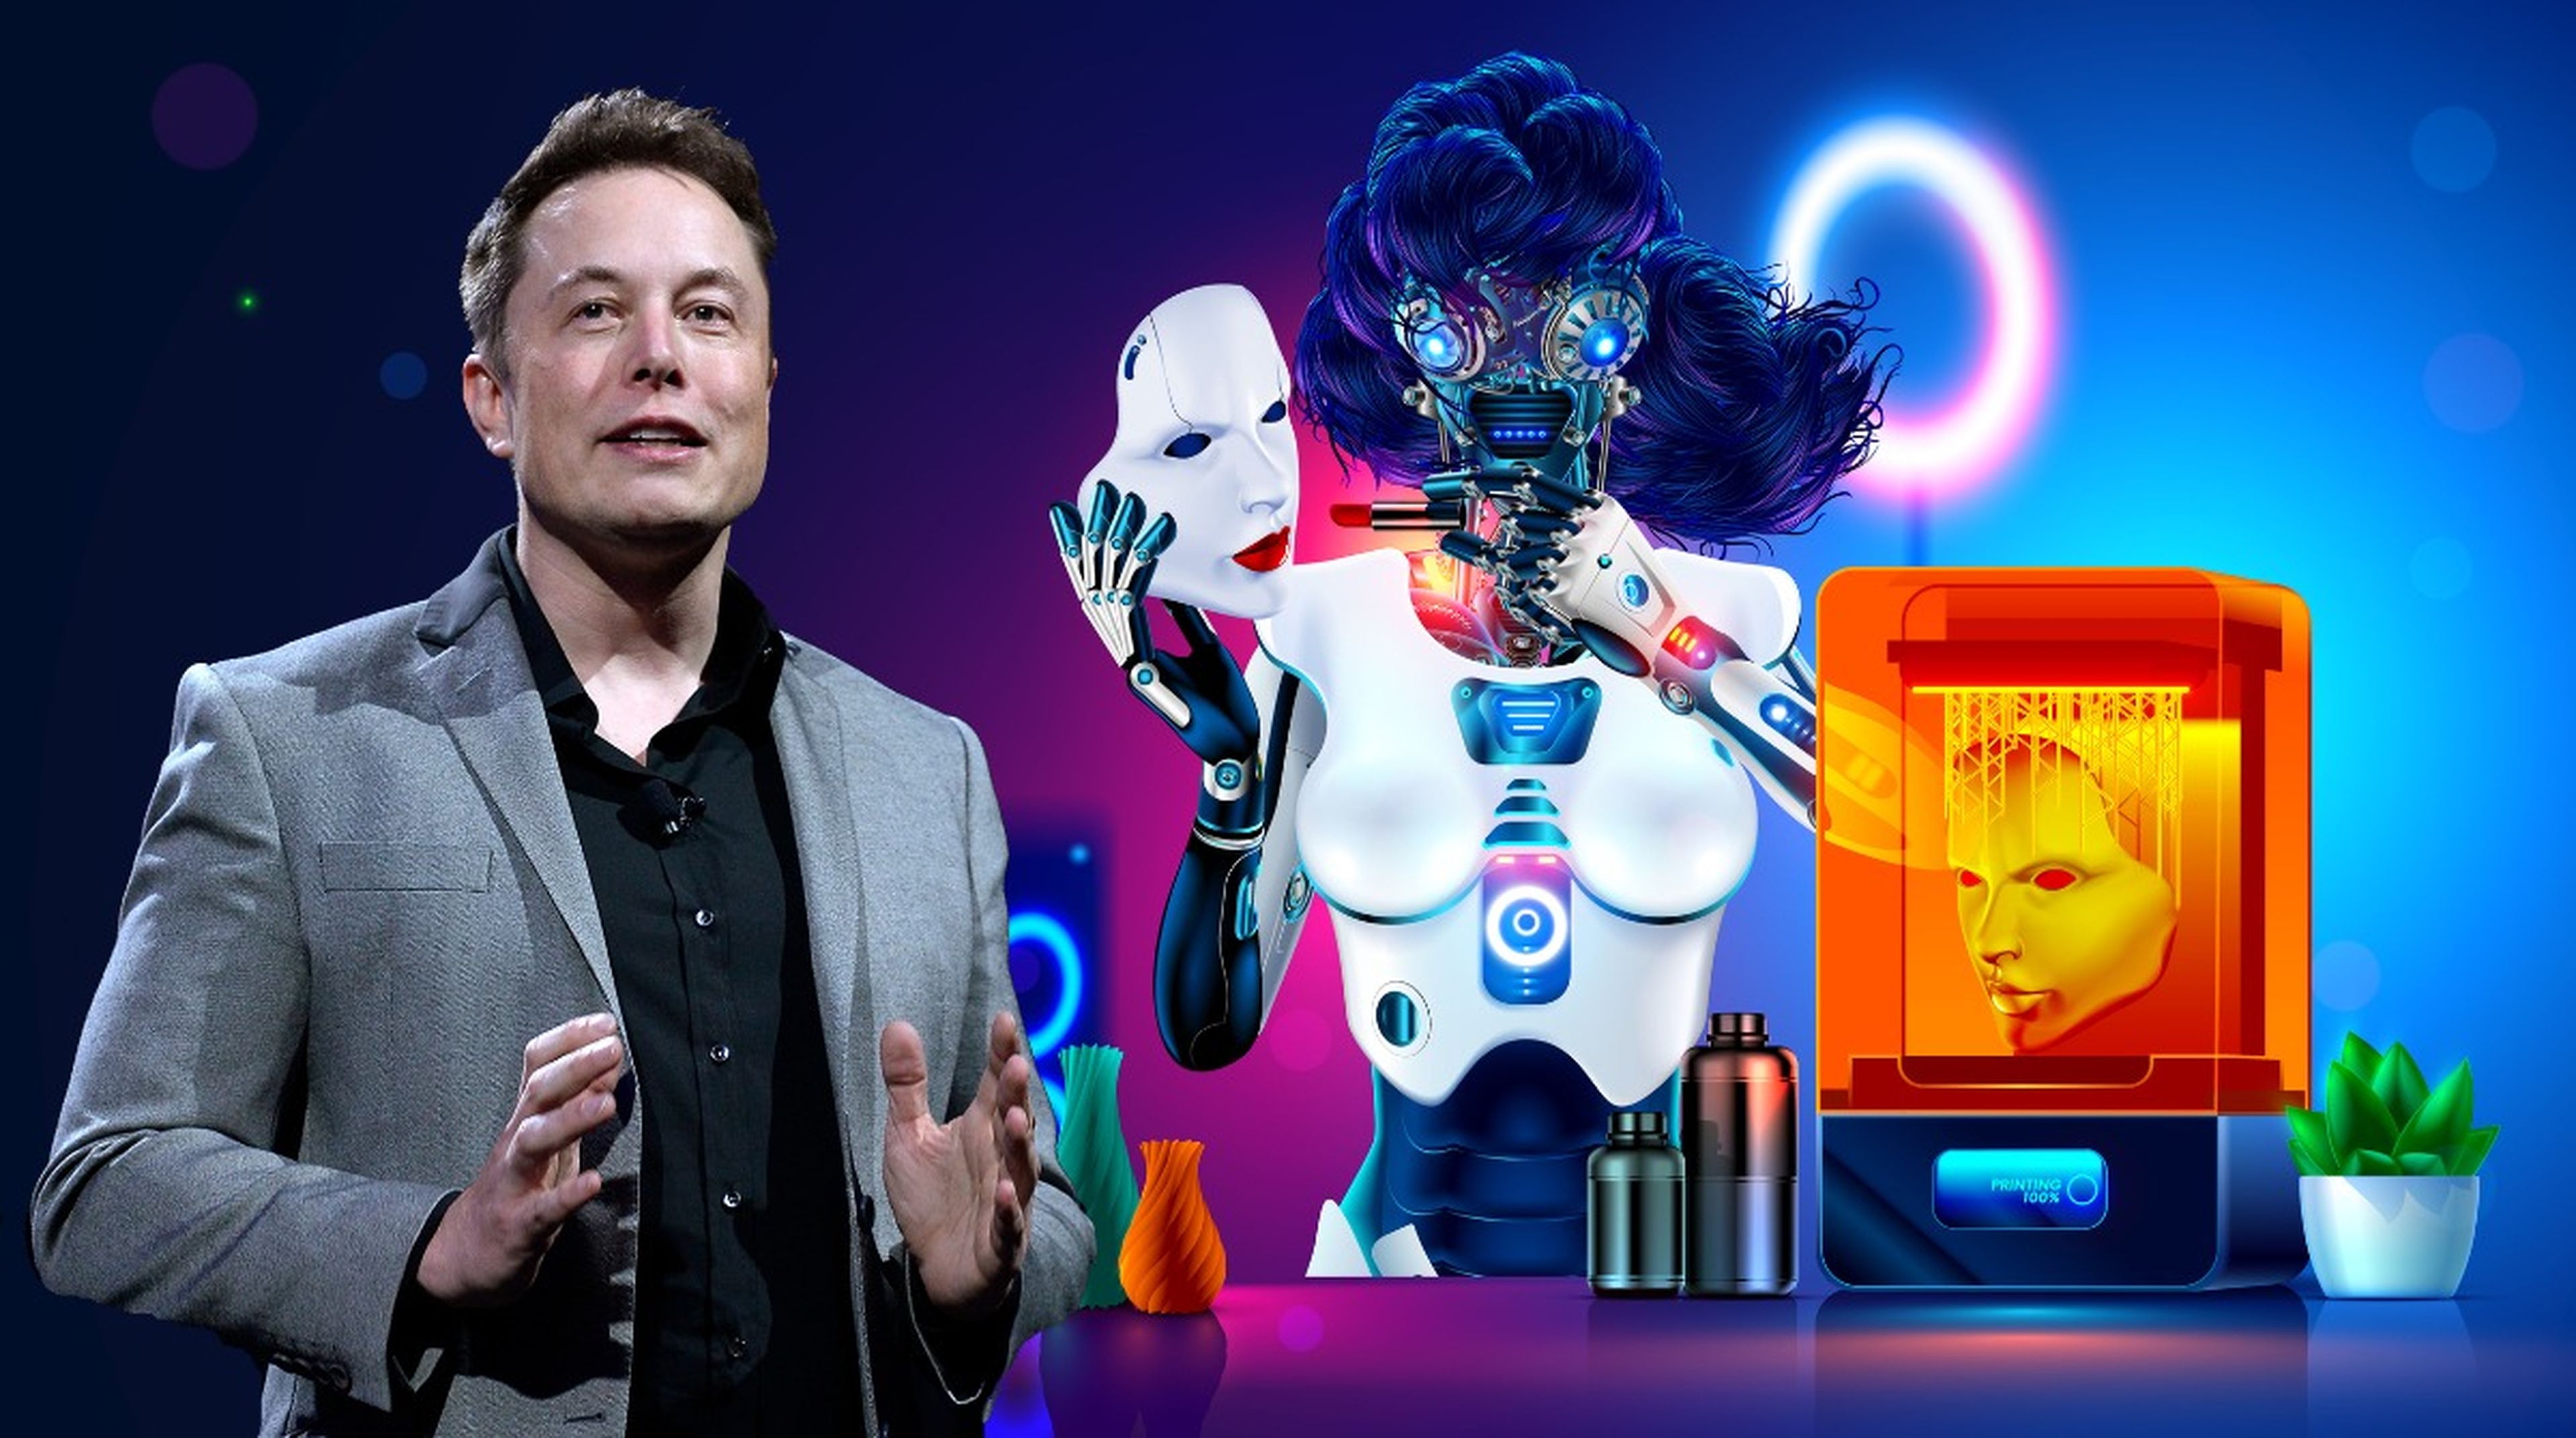 Elon Musk quiere desarrollar un cuerpo robótico para las personas con miembros amputados